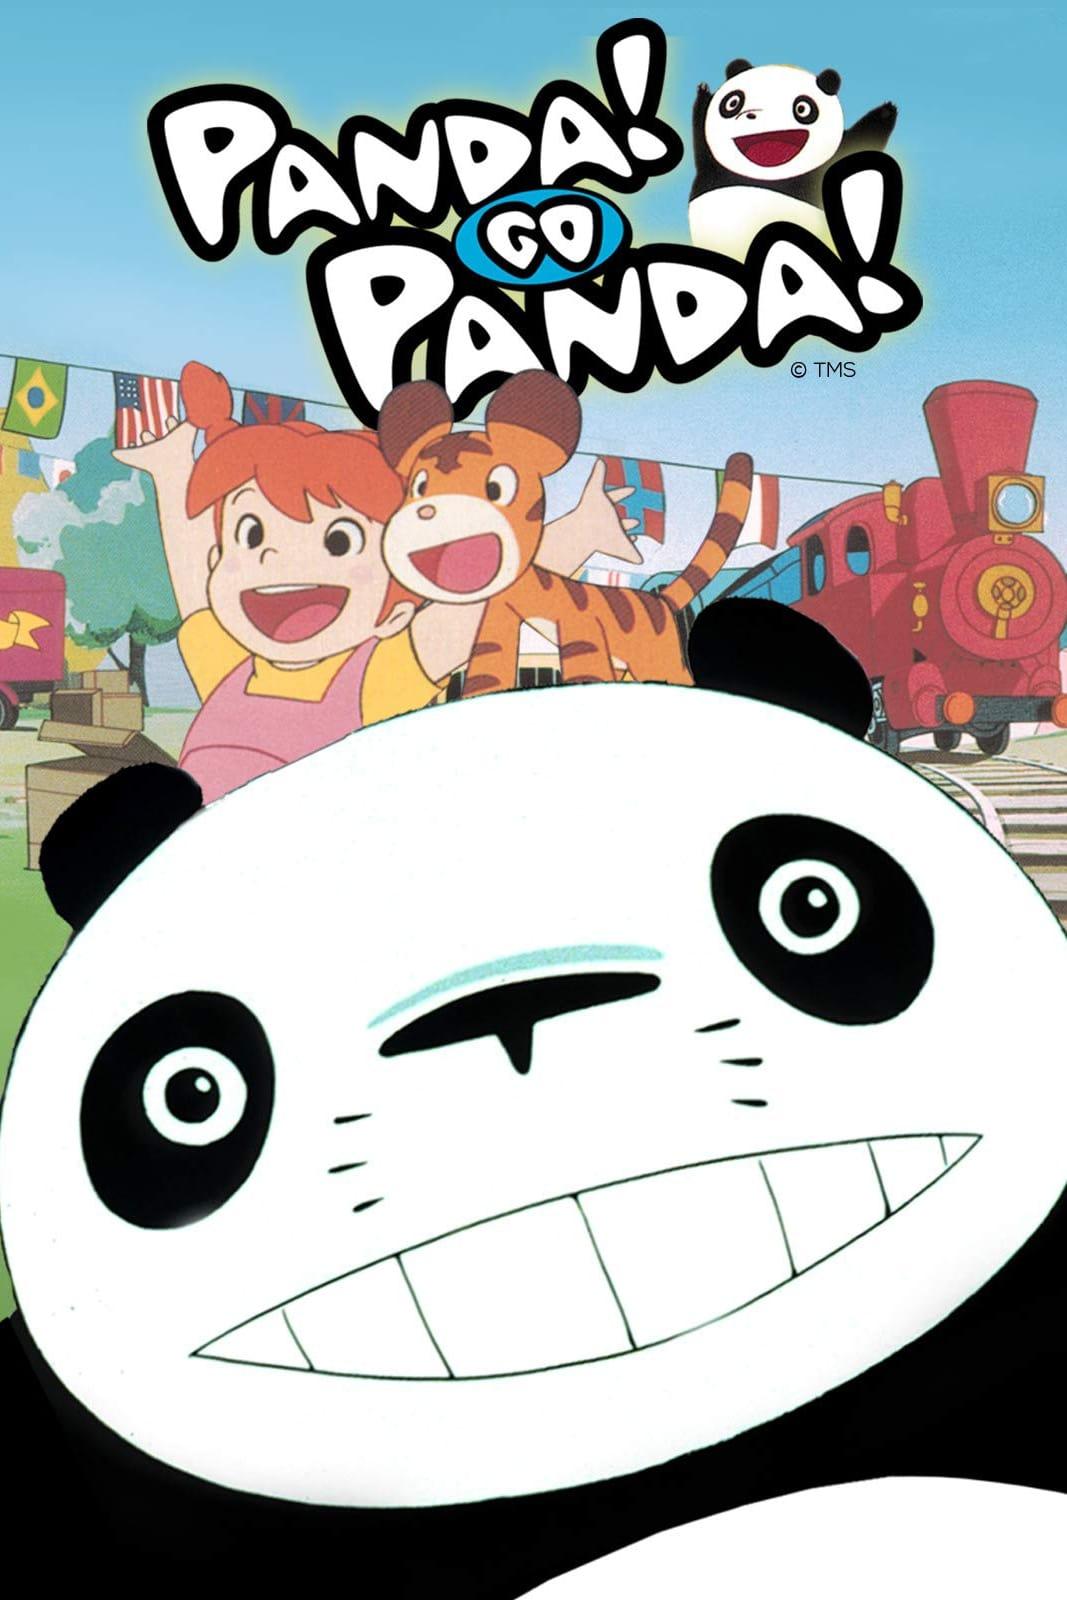 Panda! Go Panda! poster